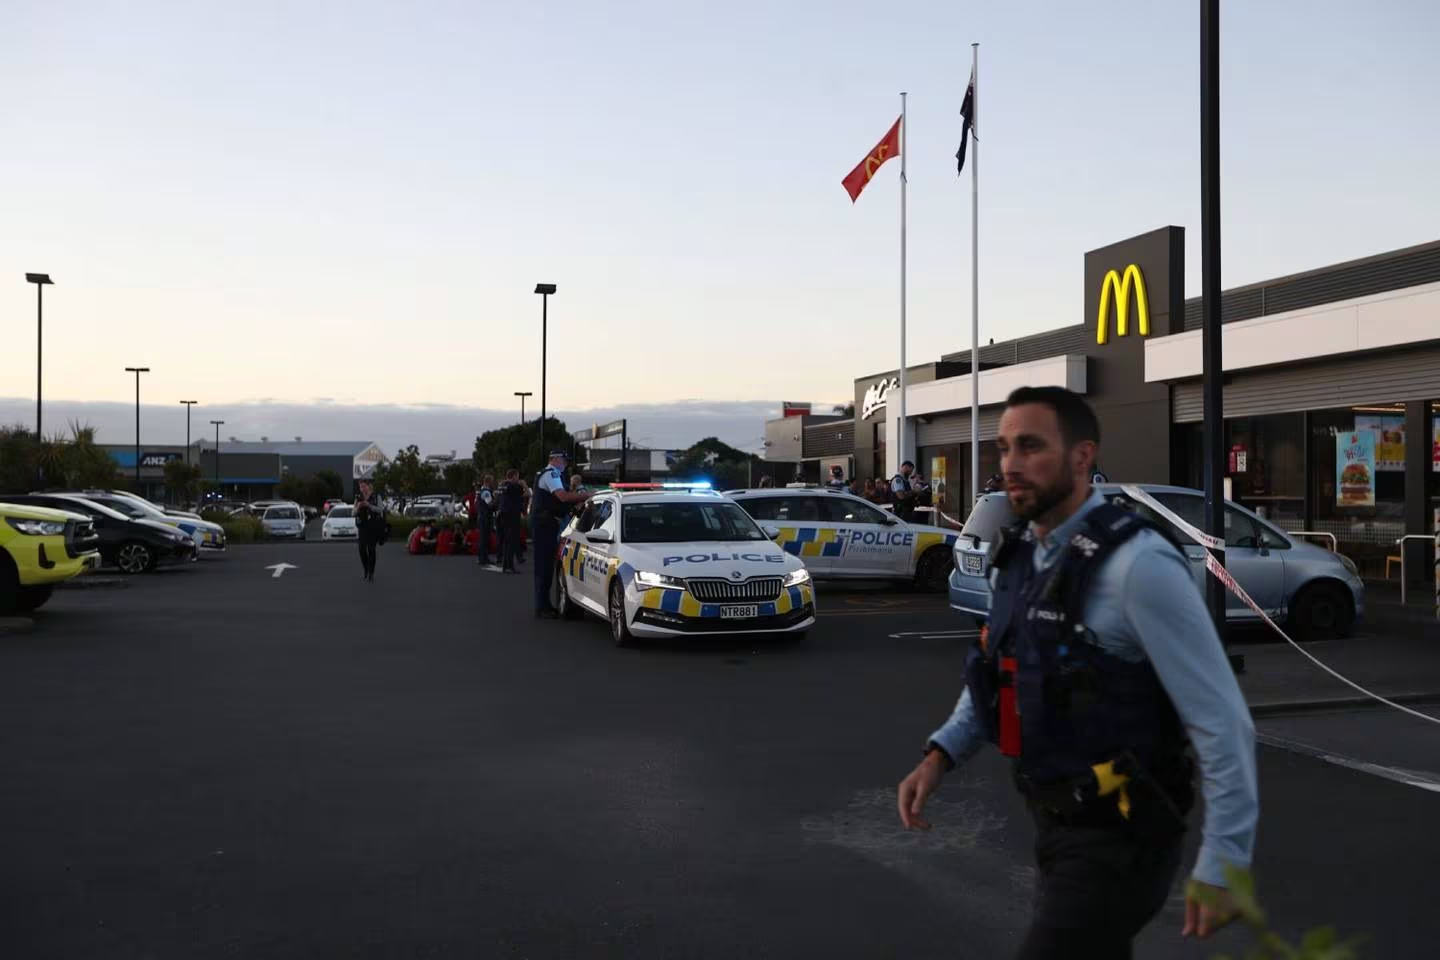 Cảnh sát cho biết một người đã bị bắt sau vụ tấn công cửa hàng McDonald's ở Mt Roskill vào tối thứ Năm.